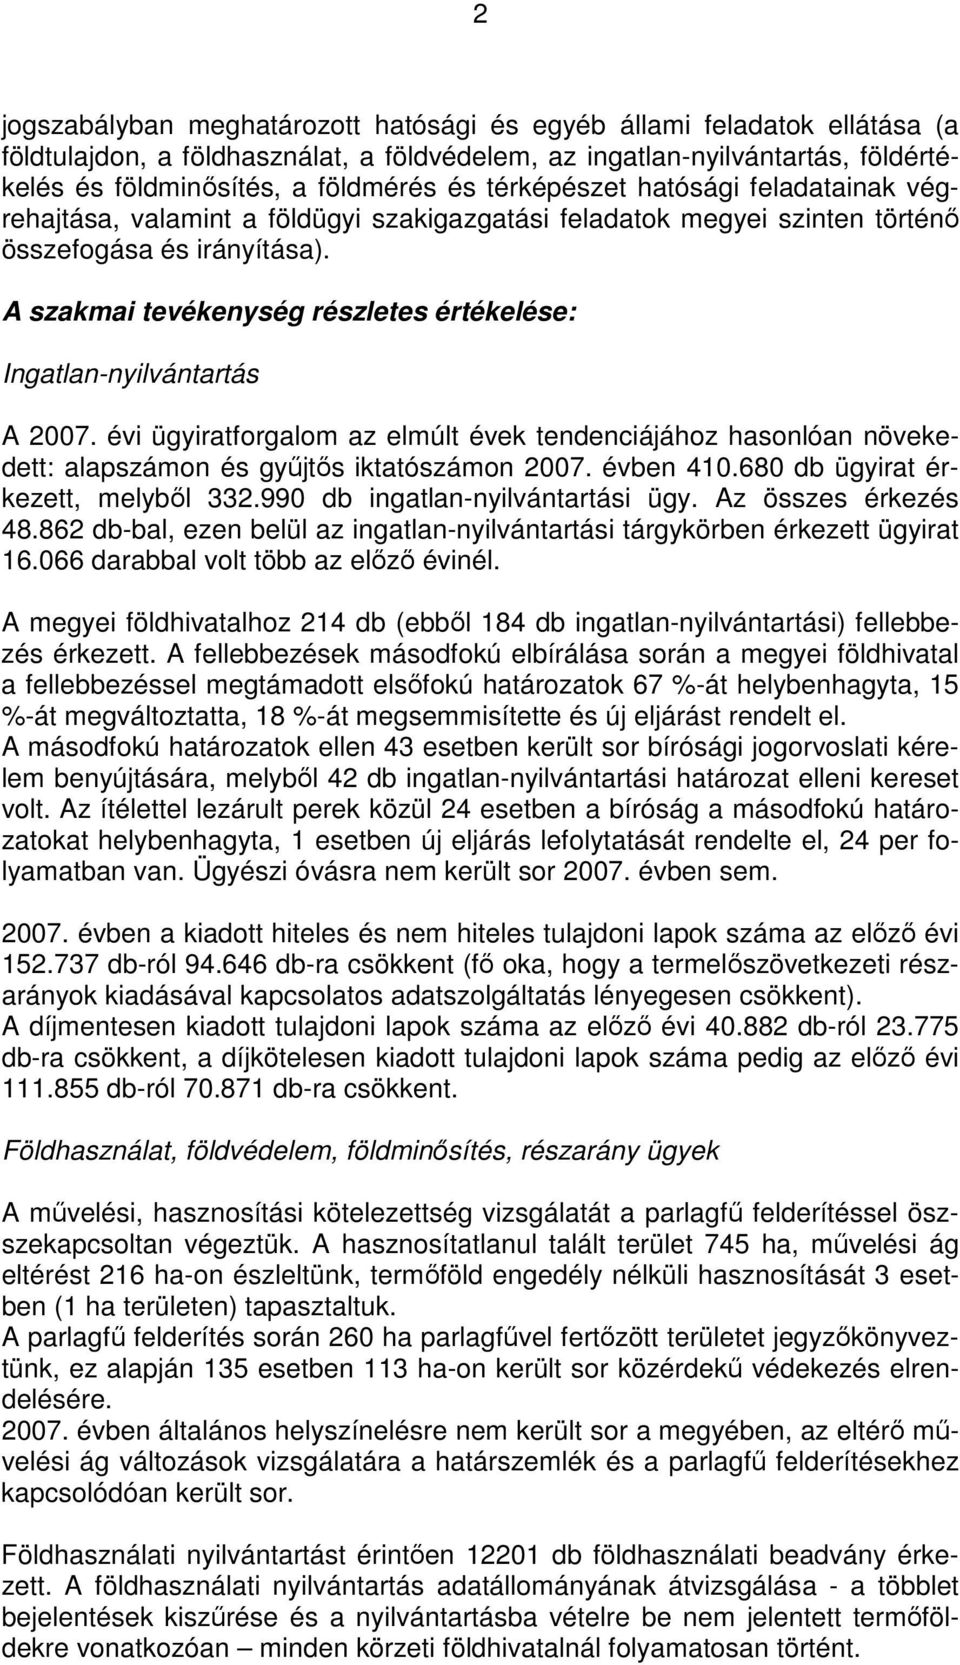 A szakmai tevékenység részletes értékelése: Ingatlan-nyilvántartás A 2007. évi ügyiratforgalom az elmúlt évek tendenciájához hasonlóan növekedett: alapszámon és győjtıs iktatószámon 2007. évben 410.